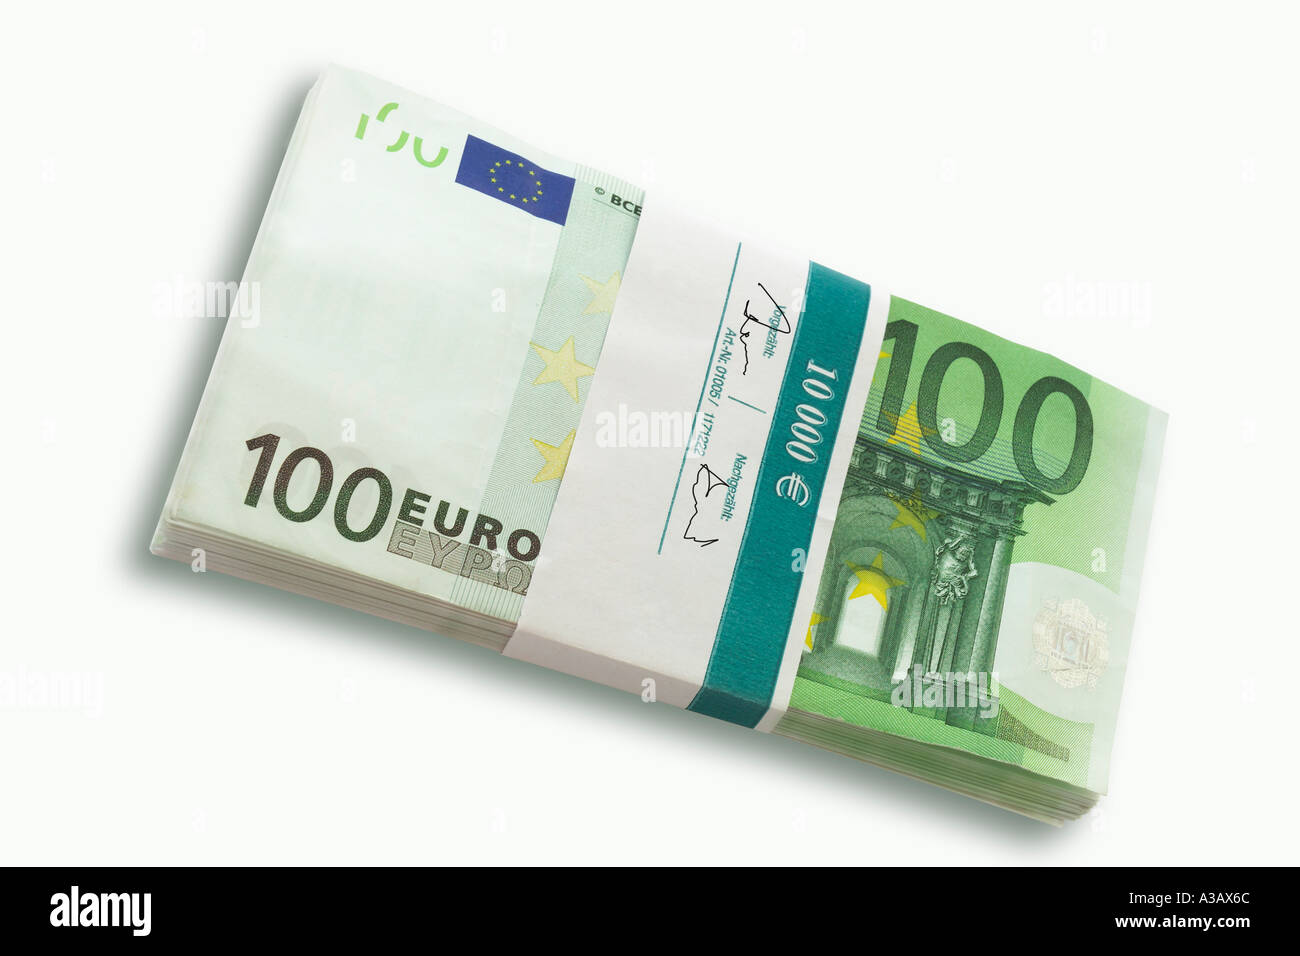 100 Euro notes Stock Photo